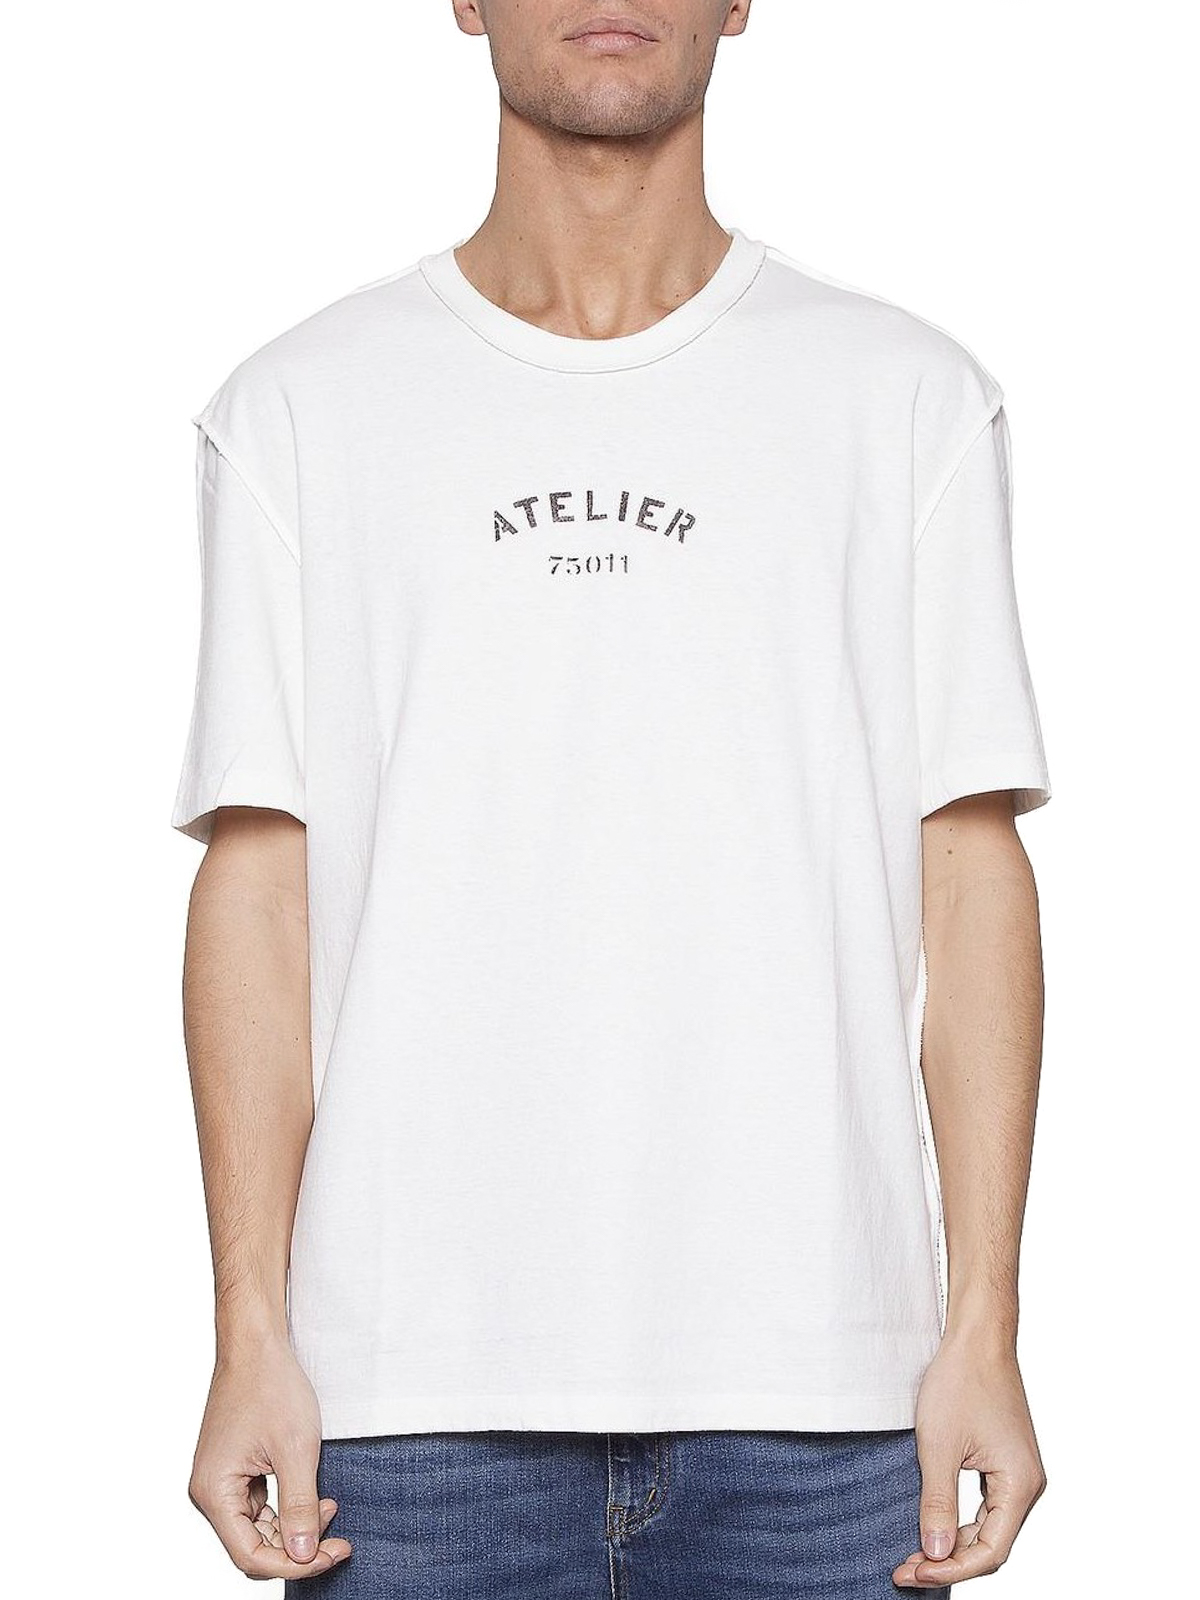 Afslut dynamisk smukke T-shirts Maison Margiela - Atelier print basic white Tee -  S50GC0498S22948101